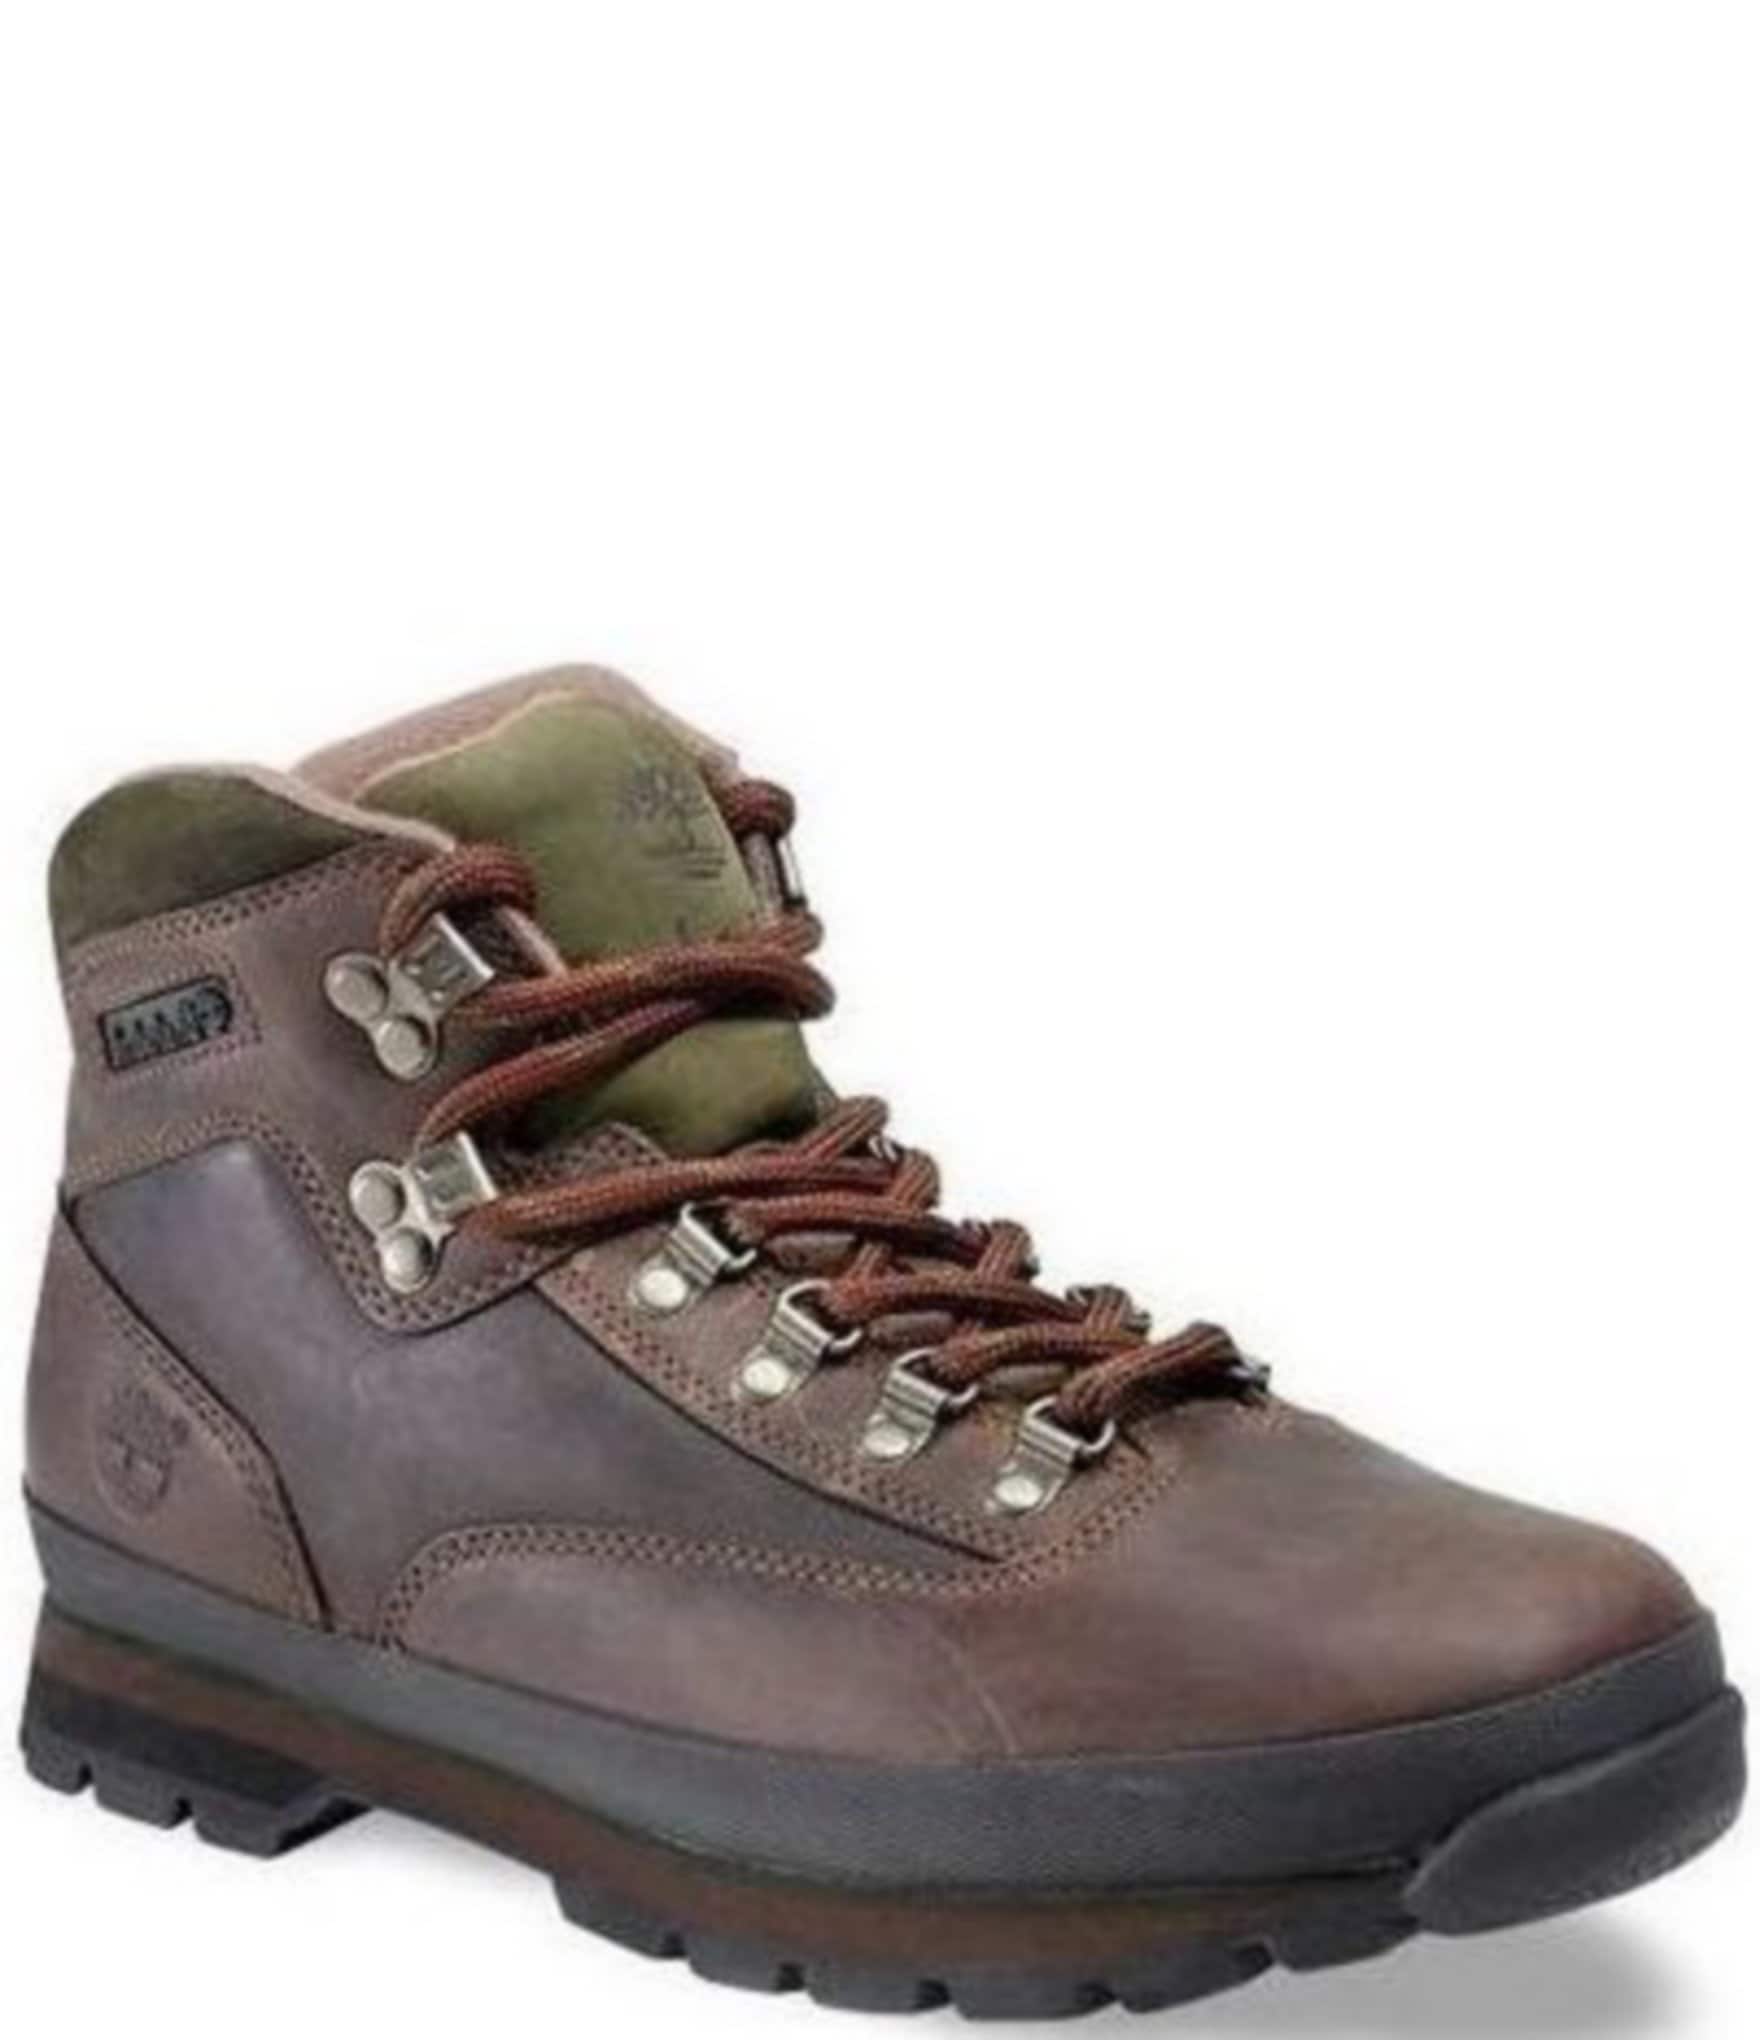 Timberland(ティンバーランド) Euro Hiker Hiking Boots(ユーロハイカー ハイキングブーツ) 26.5cm ...